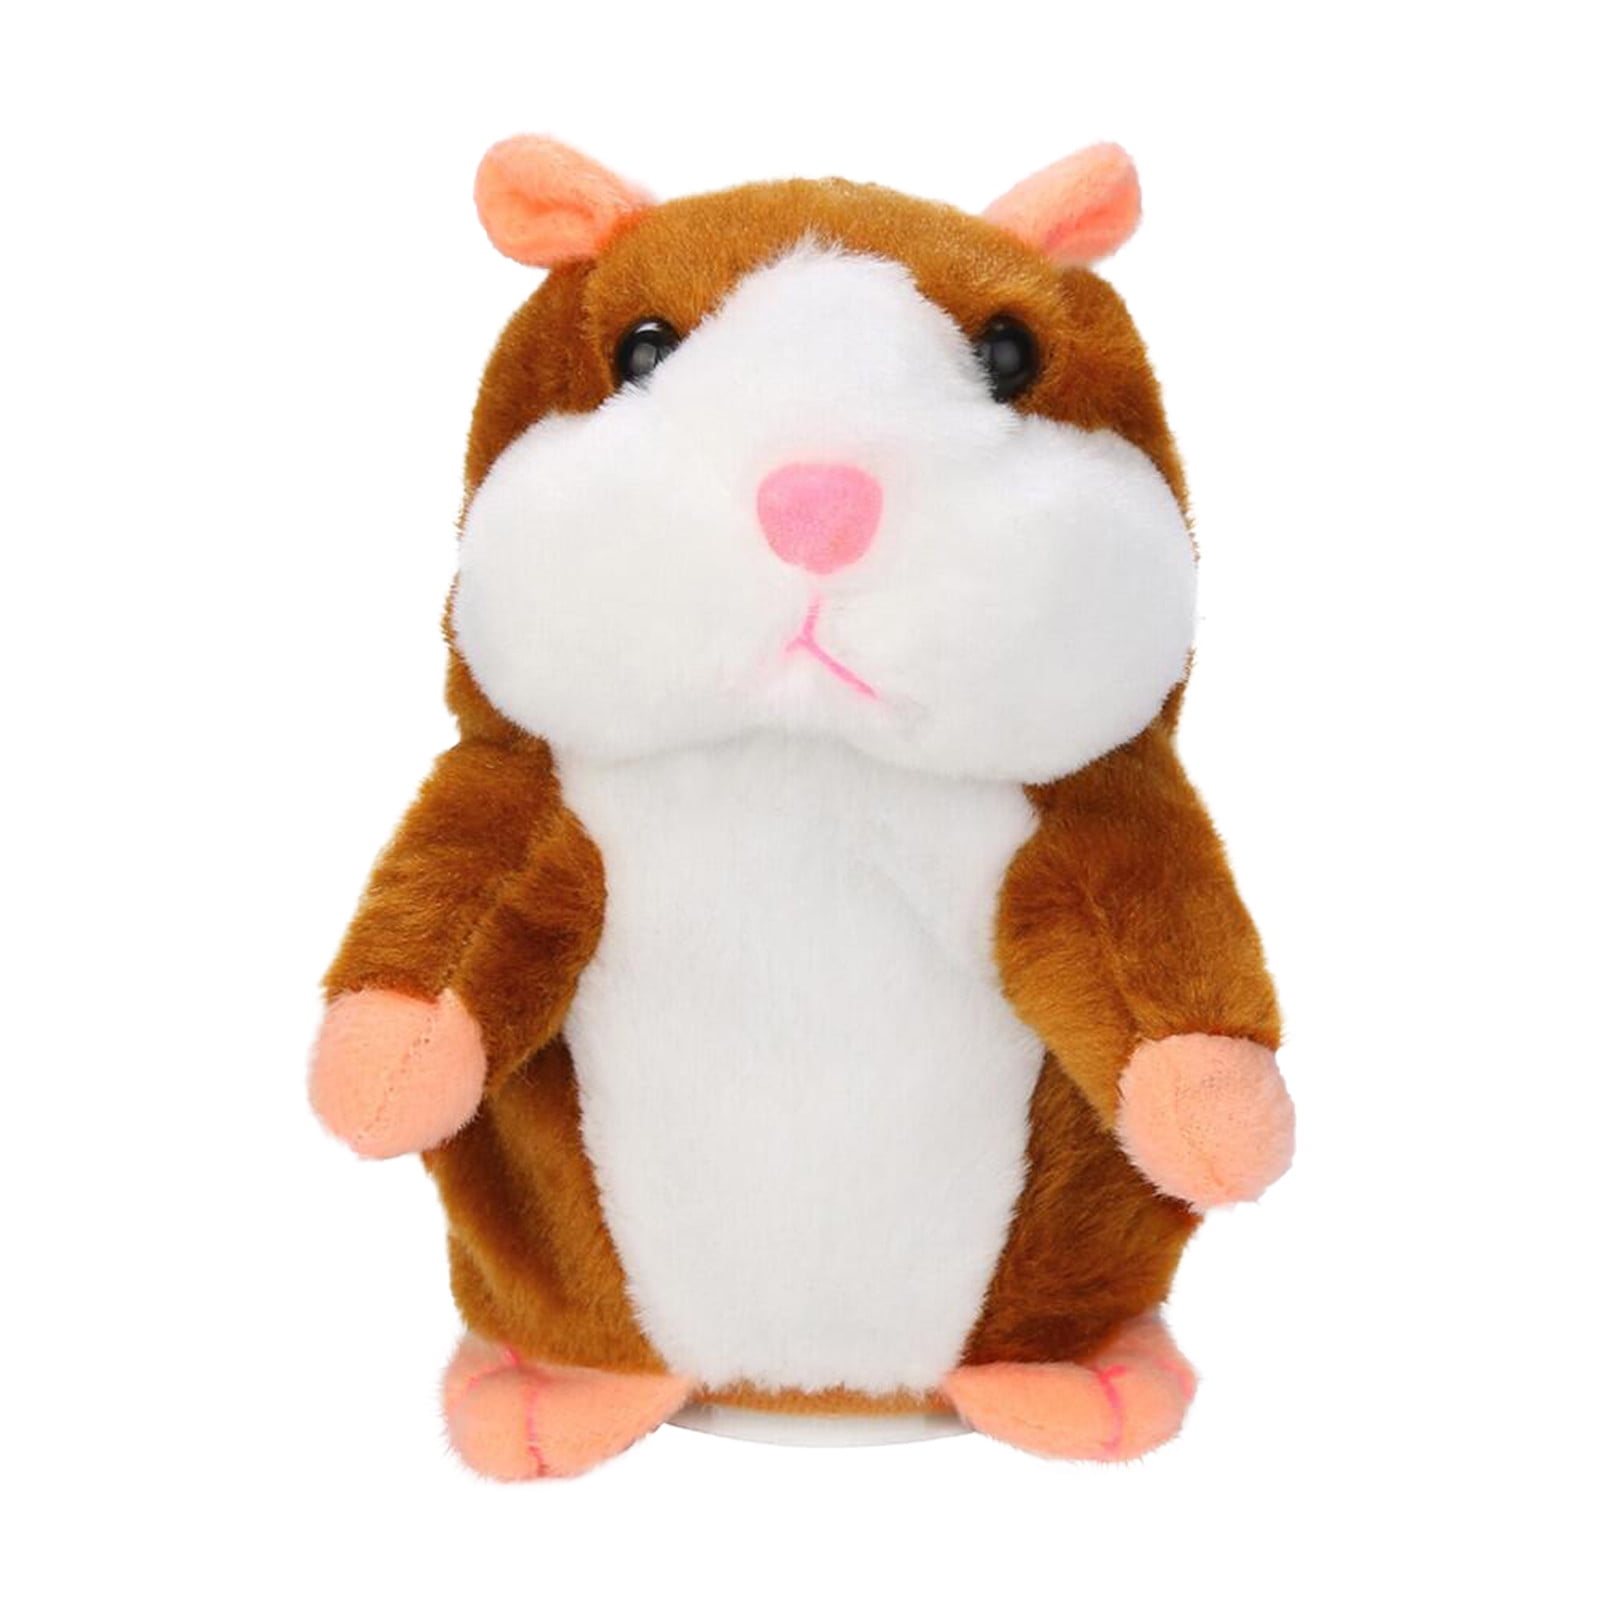 Rdorable Interesting Speak Talking Record Hamster Mouse Plush Kids Toys Hot YI 